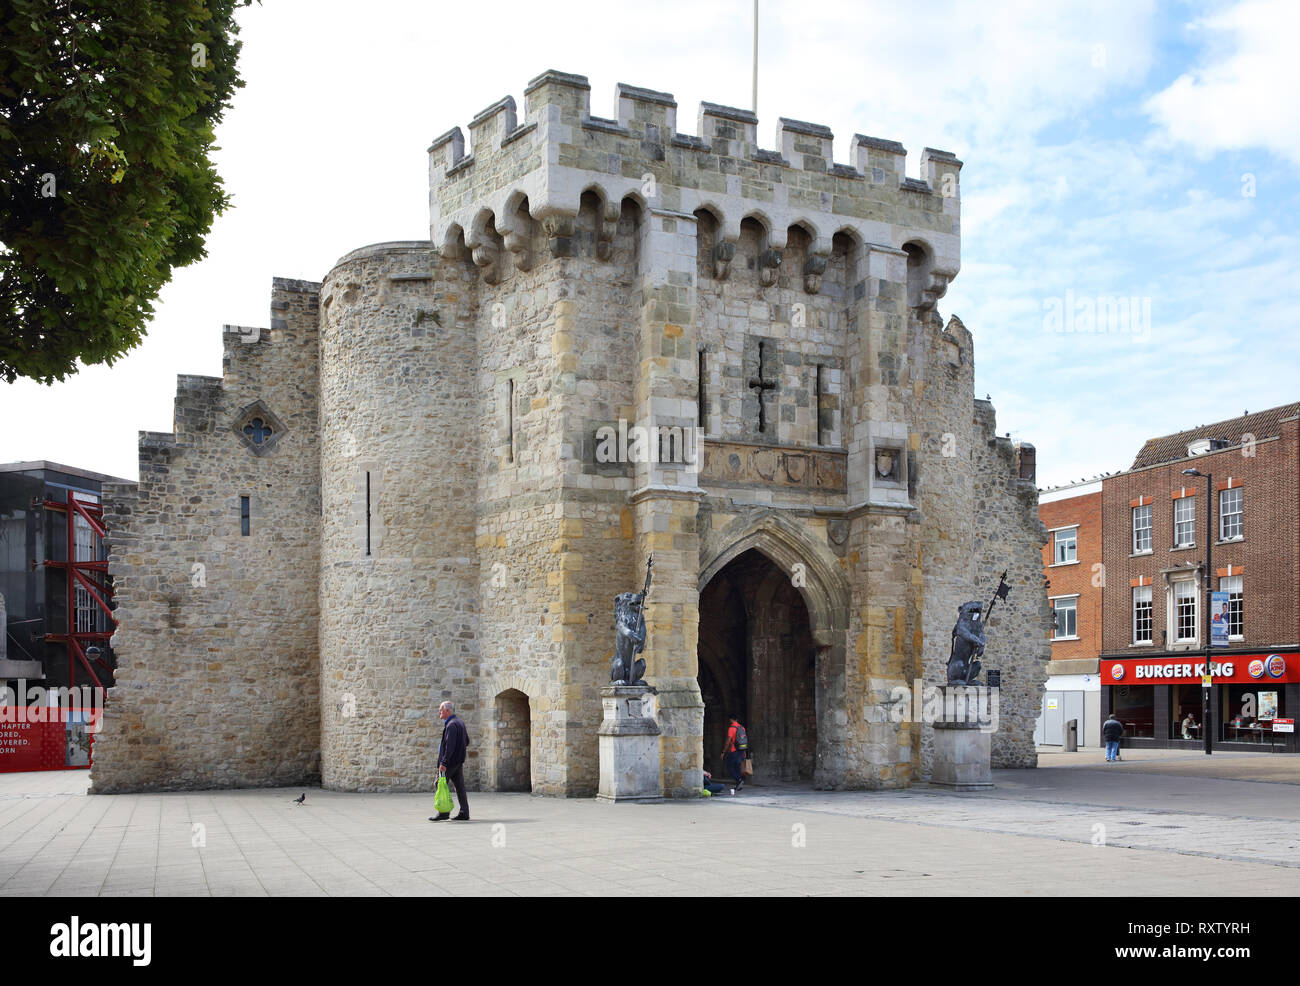 Costruito tra il 1100 e il 1300 d.c. Bargate è ciò che rimane del nord-rivolta gatehouse leader di quello che allora era il centro della città di Southampton, Regno Unito Foto Stock